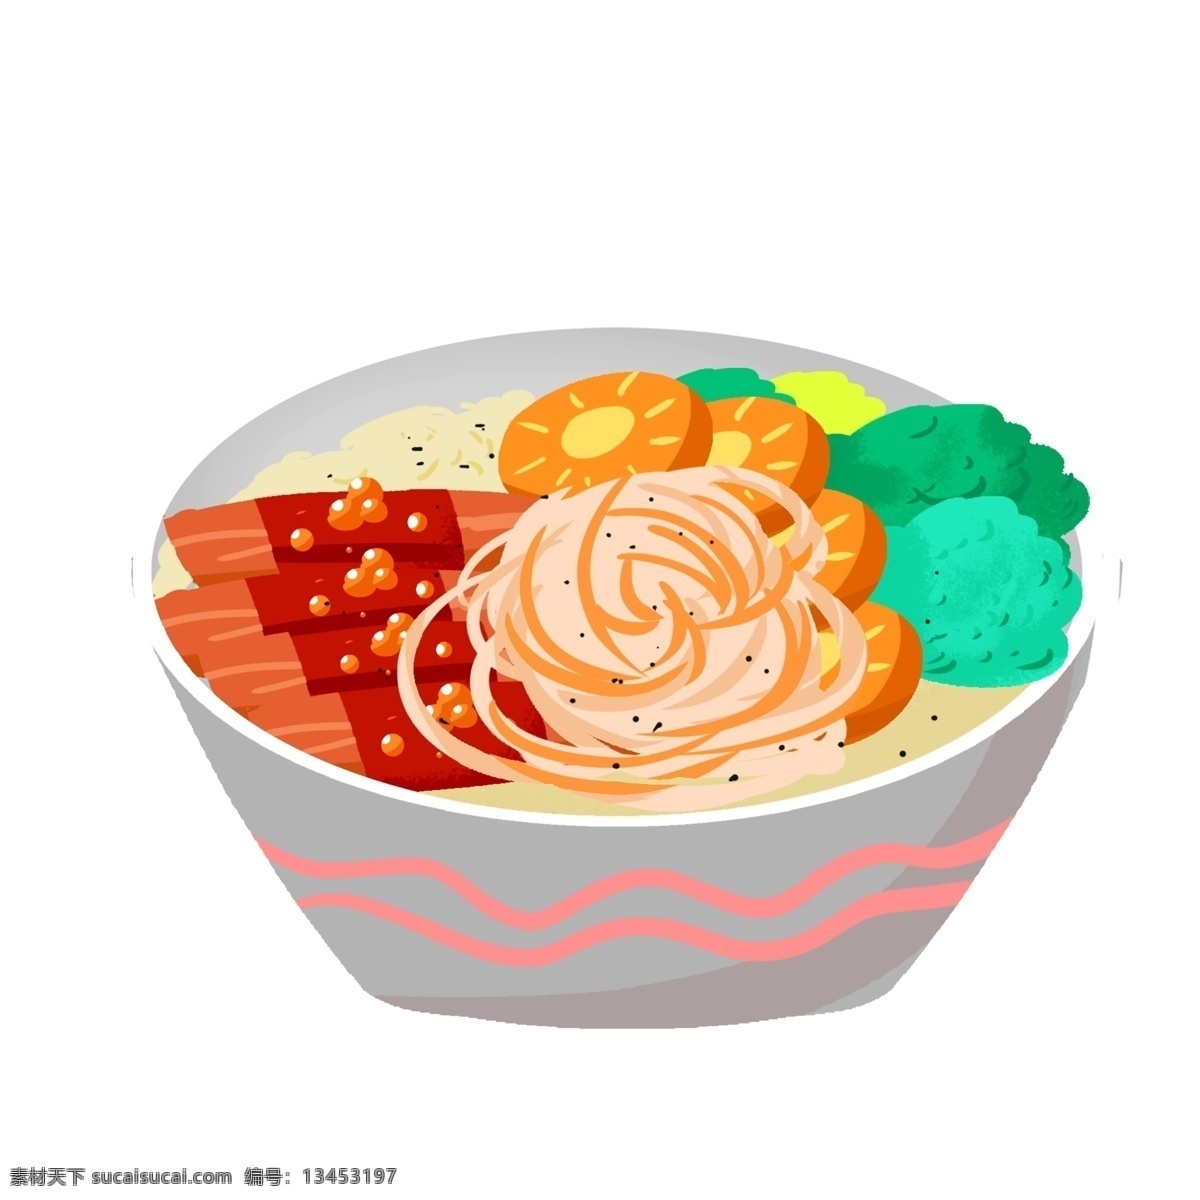 美味 面条 西兰花 手绘 插画 中餐 野餐 面包 牛肉 牛排 食物 简笔画 卡通 美食 食品 米饭 萝卜